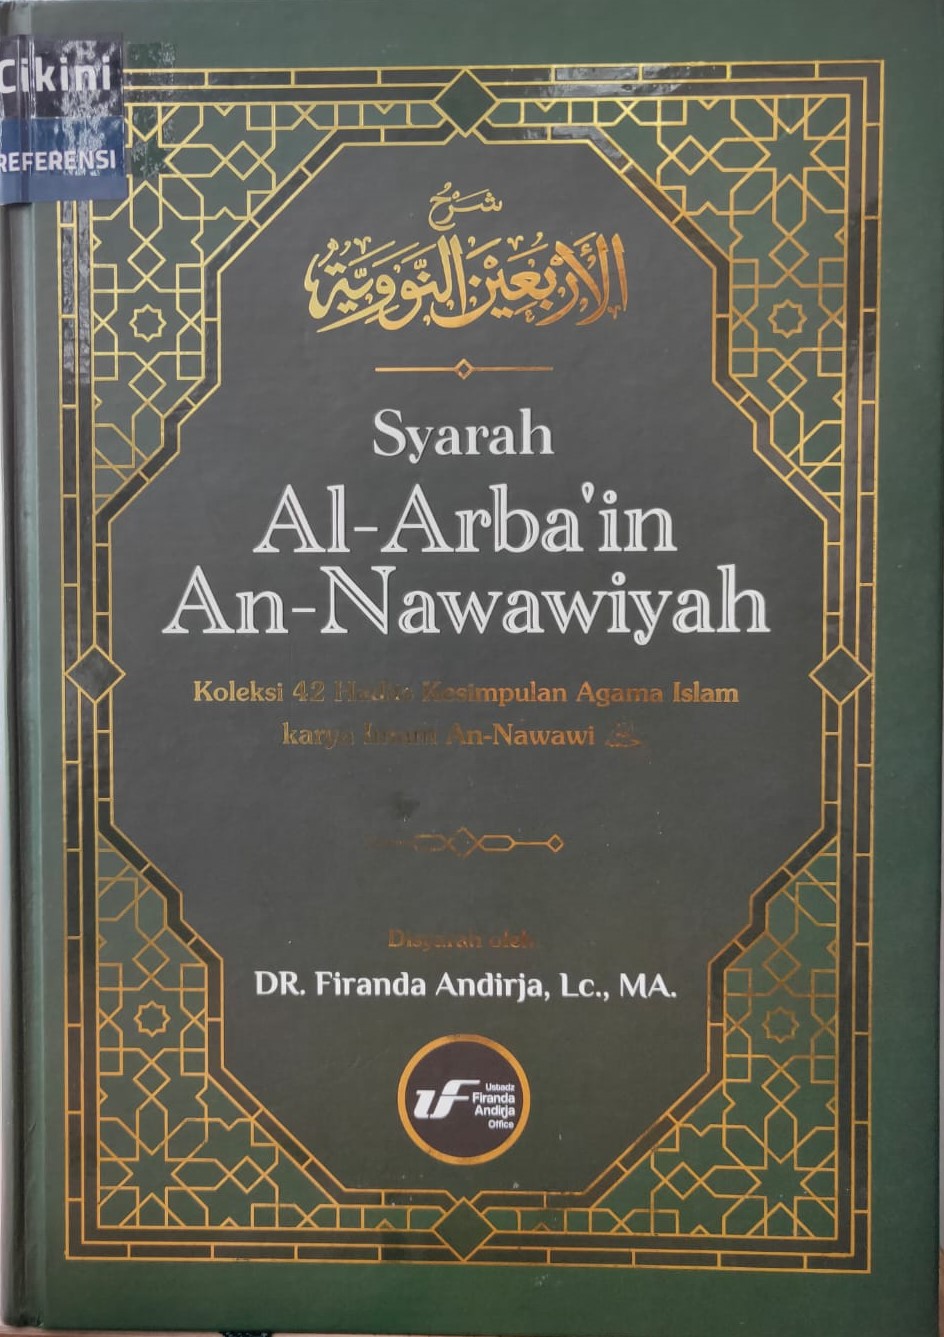 Syarah Al-Arba'in An-Nawawiyah